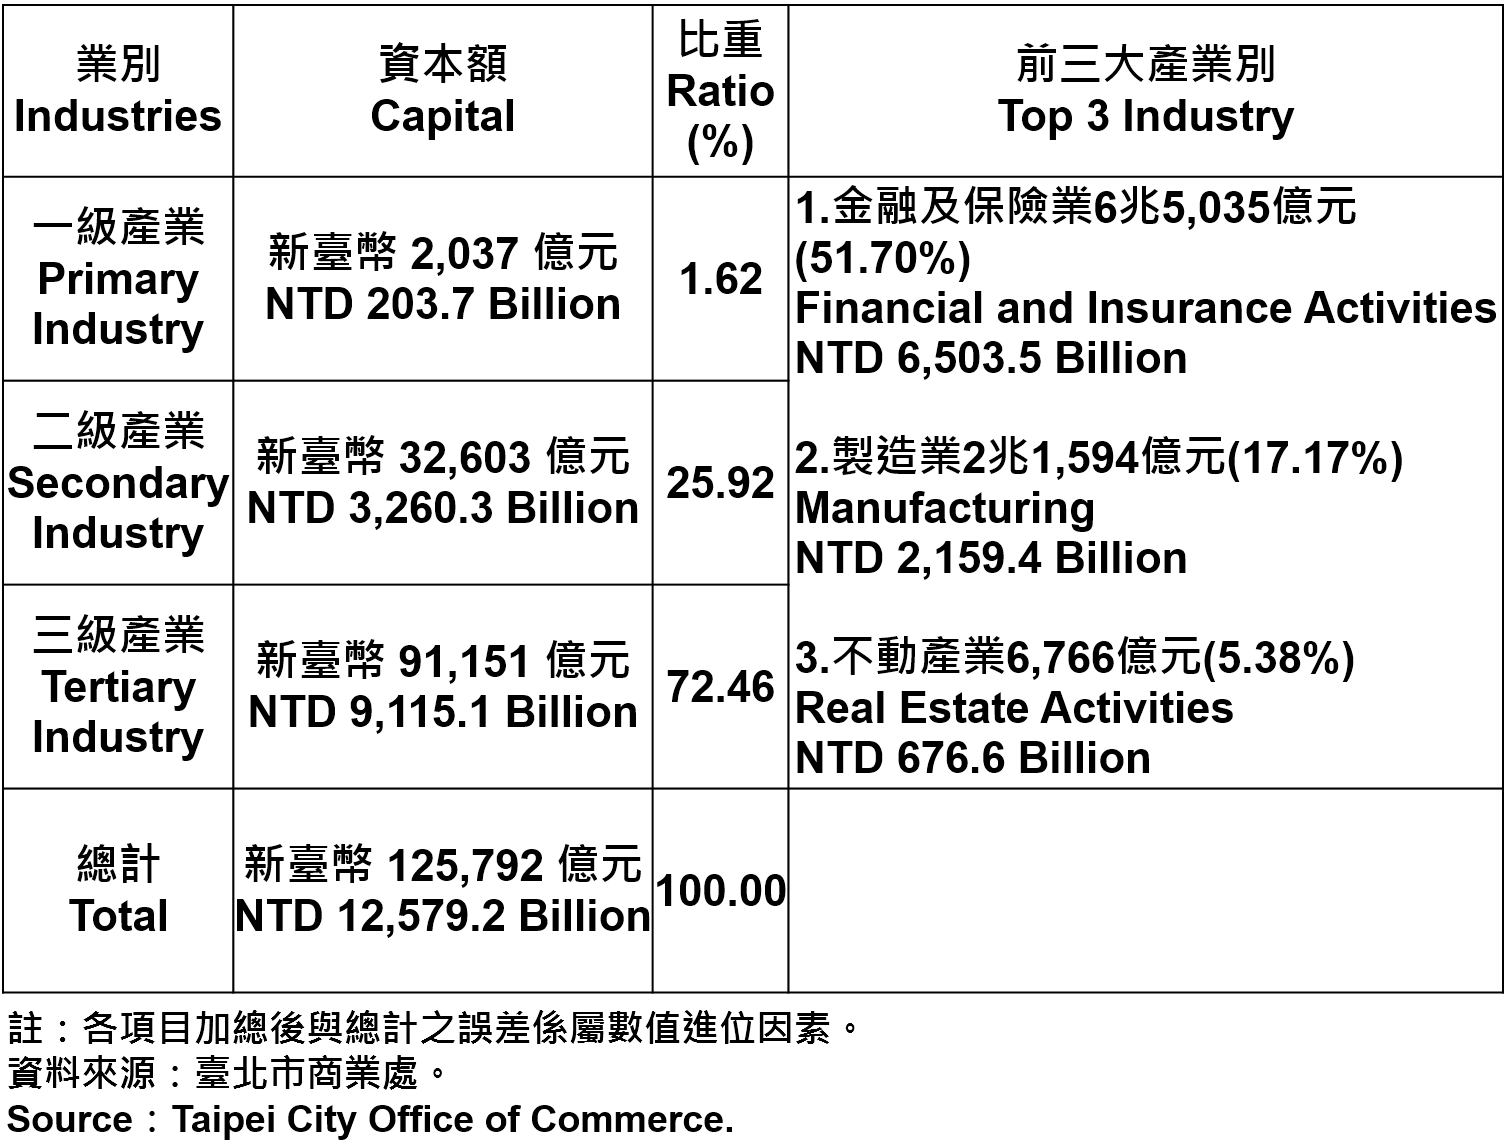 臺北市登記之公司資本總額—2019Q1 Total Capital of Companies and Firms Registered in Taipei City—2019Q1